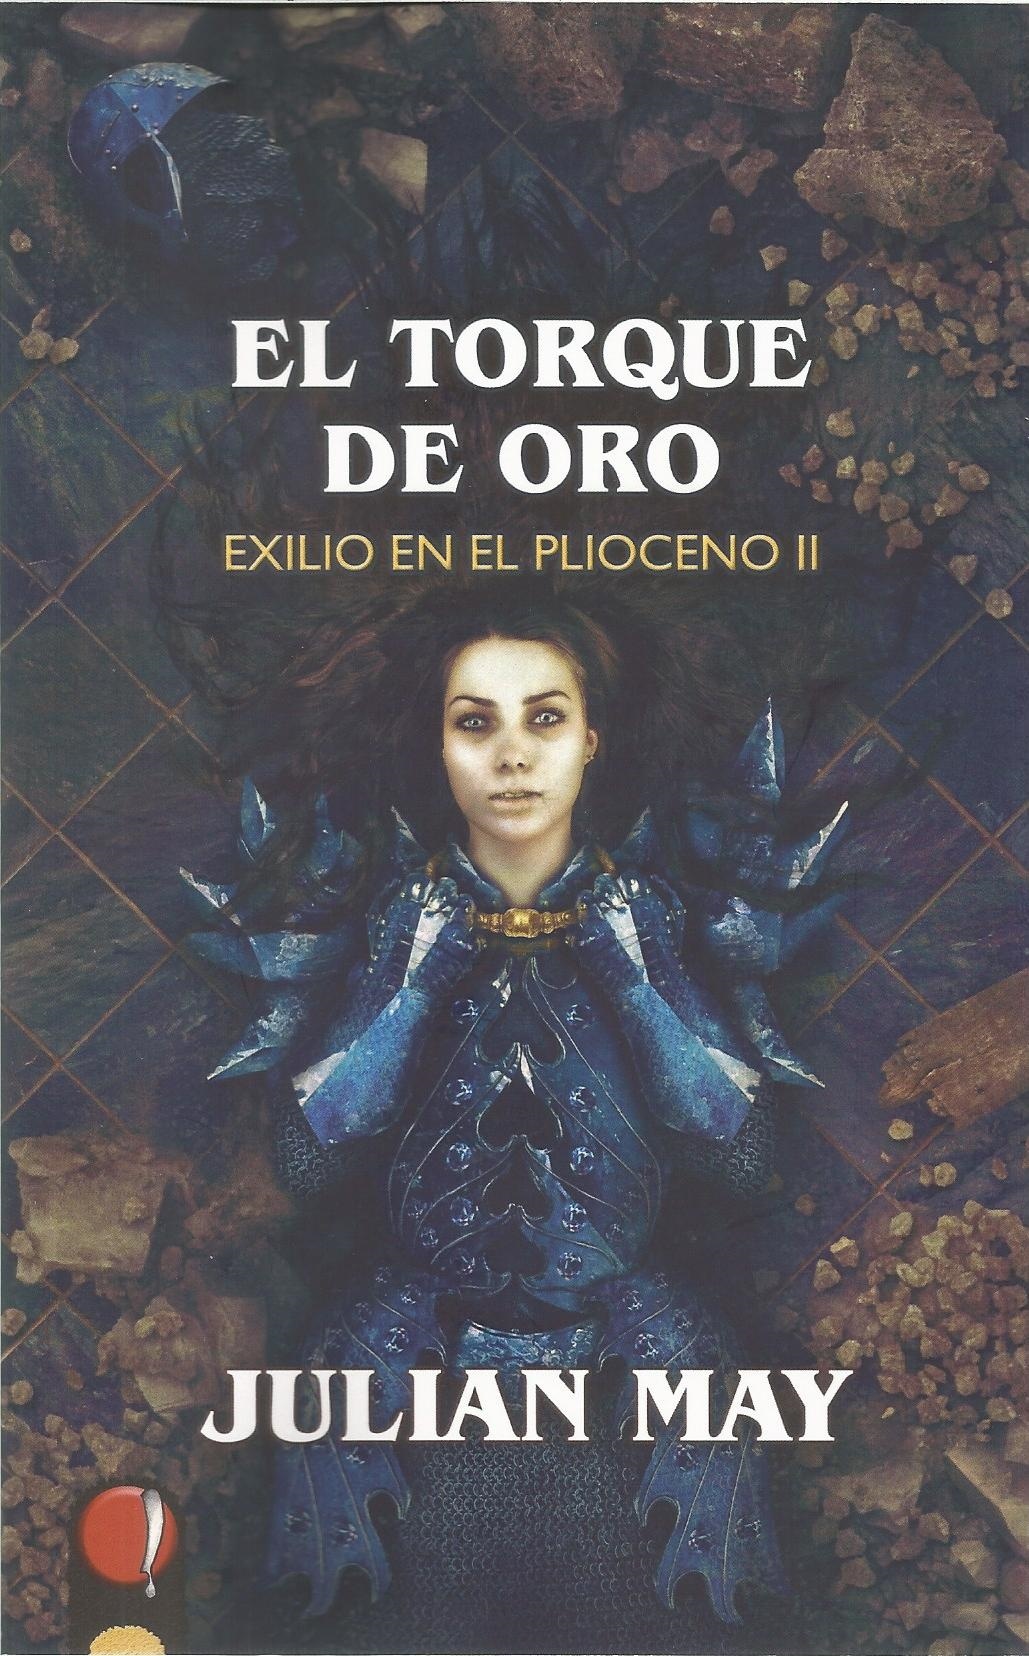 Torque de oro, El "Exilio en el Plioceno II". 